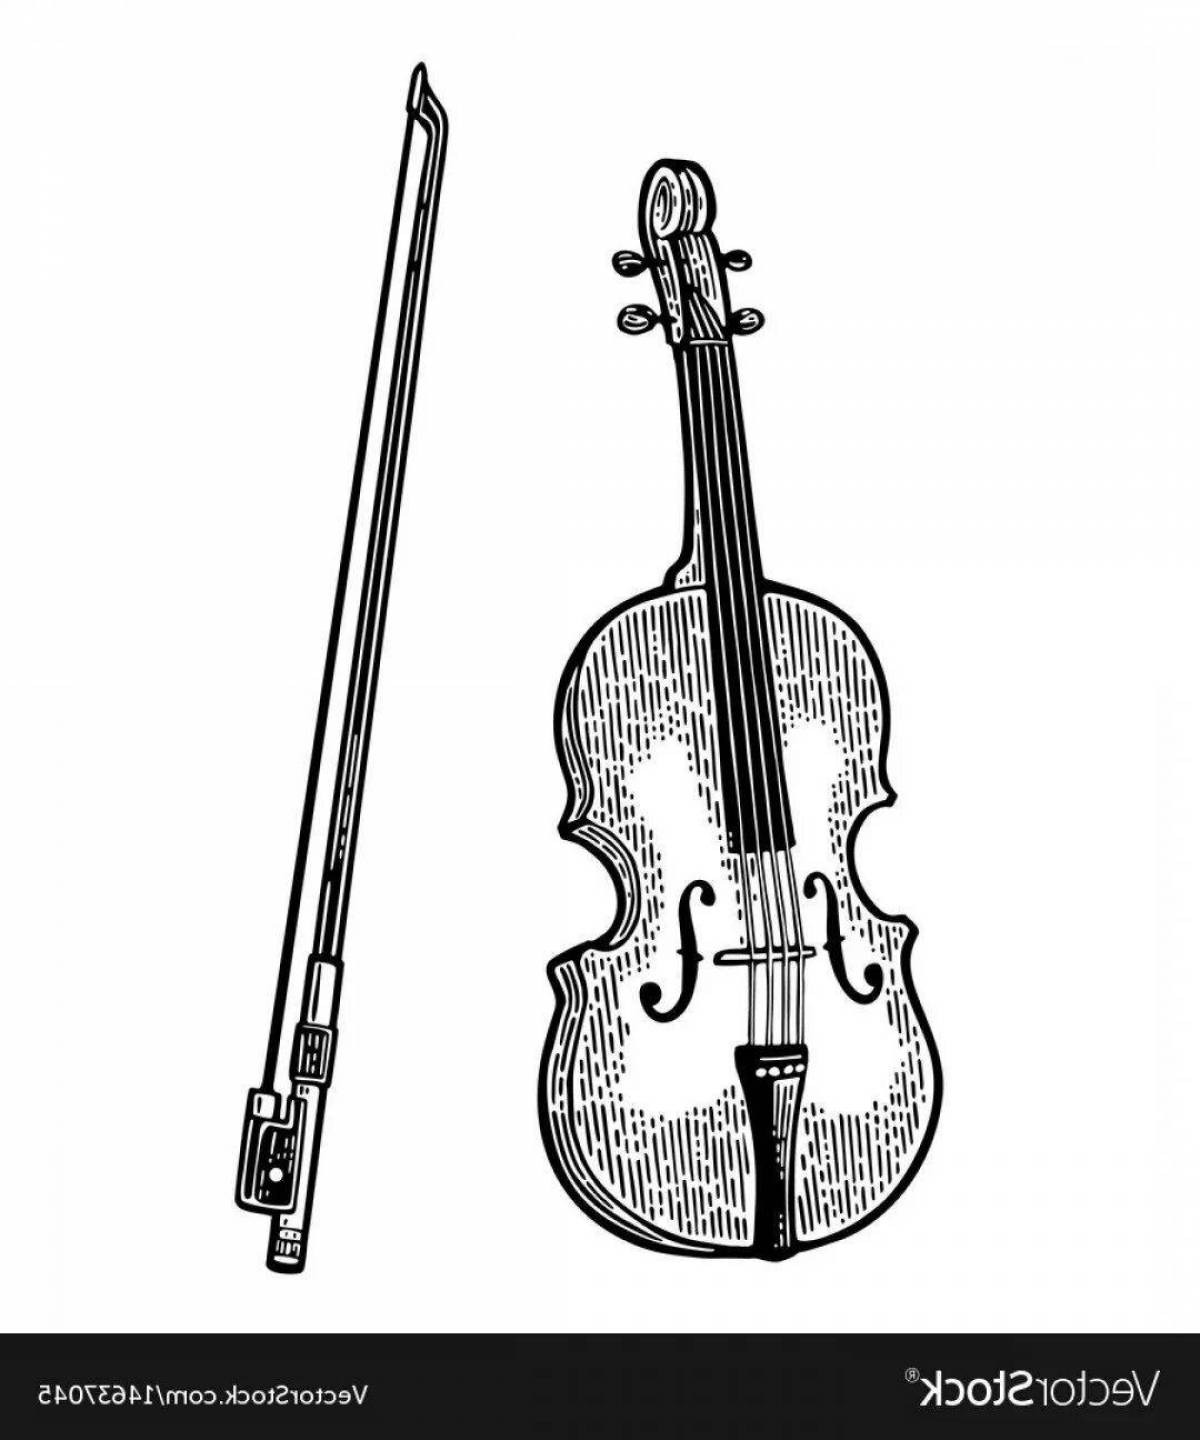 Vibrant violin and cello coloring page